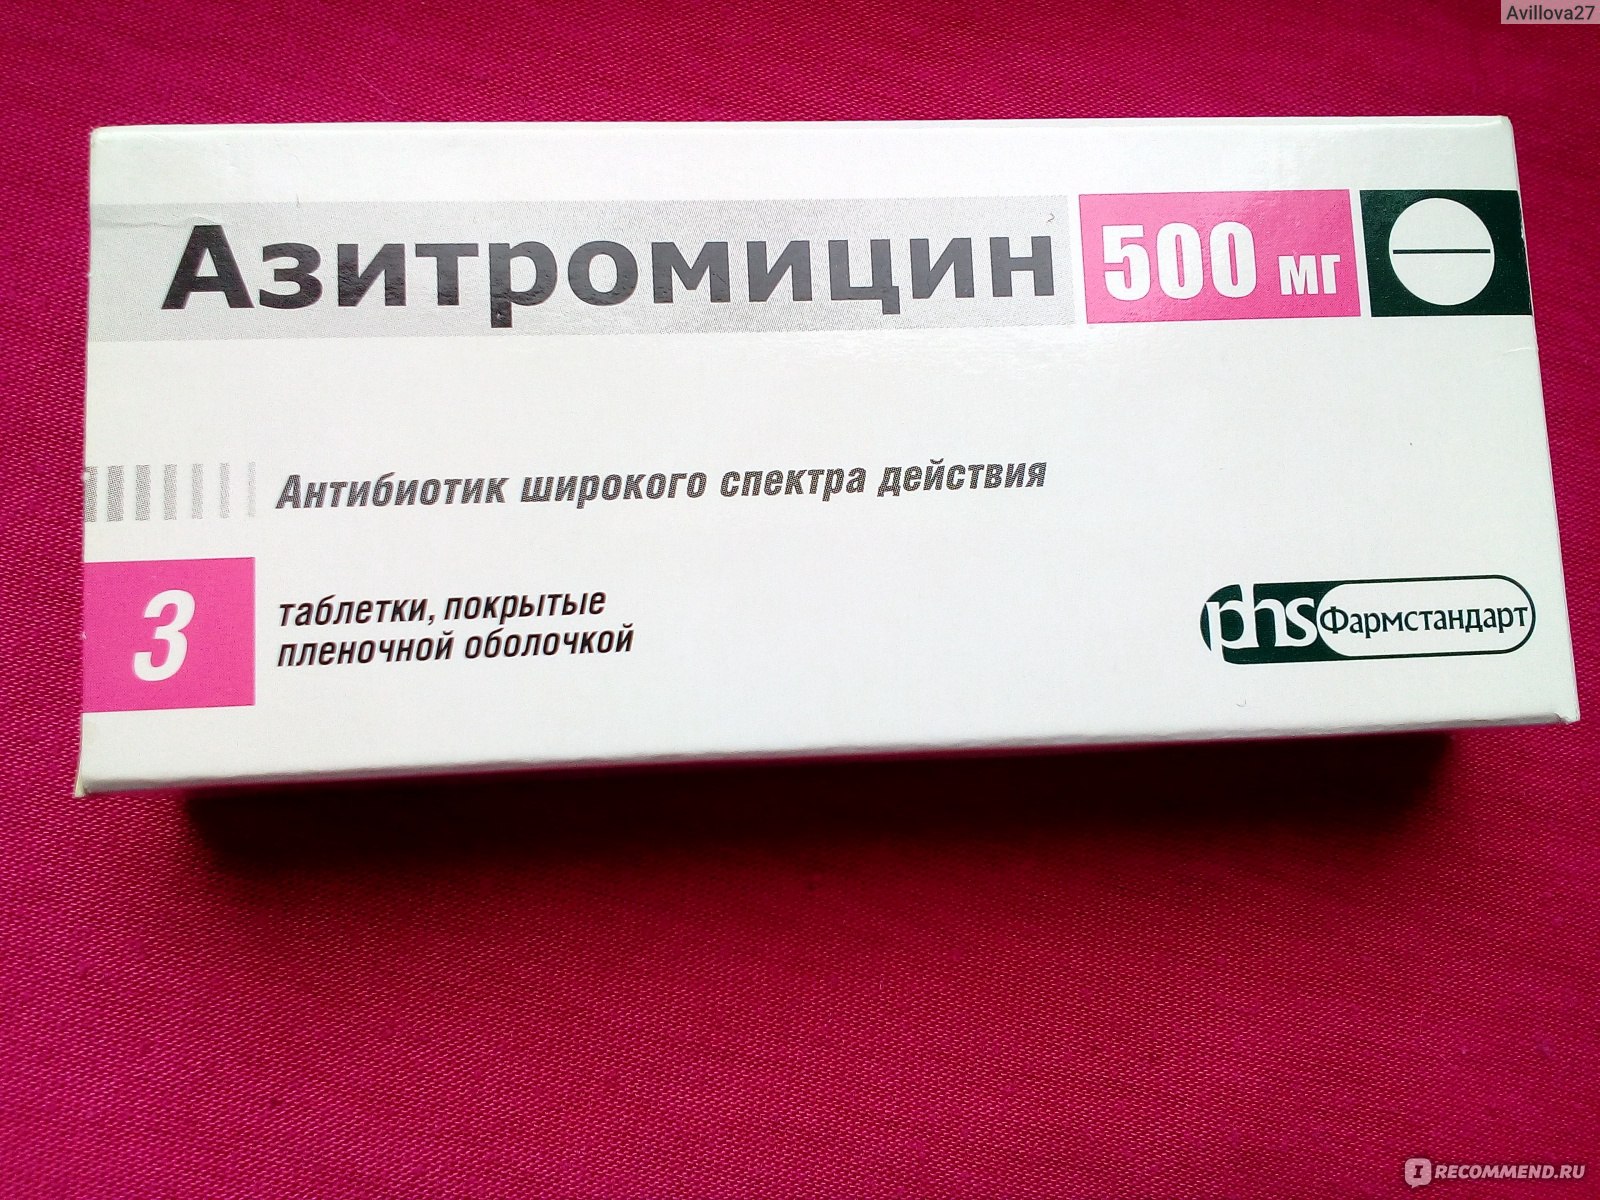 Антибиотики широкого спектра действия препараты. Антибиотик широкого спектра Азитромицин. Азитромицин Фармстандарт. Дешёвый антибиотик широкого спектра. Российские антибиотики широкого спектра.